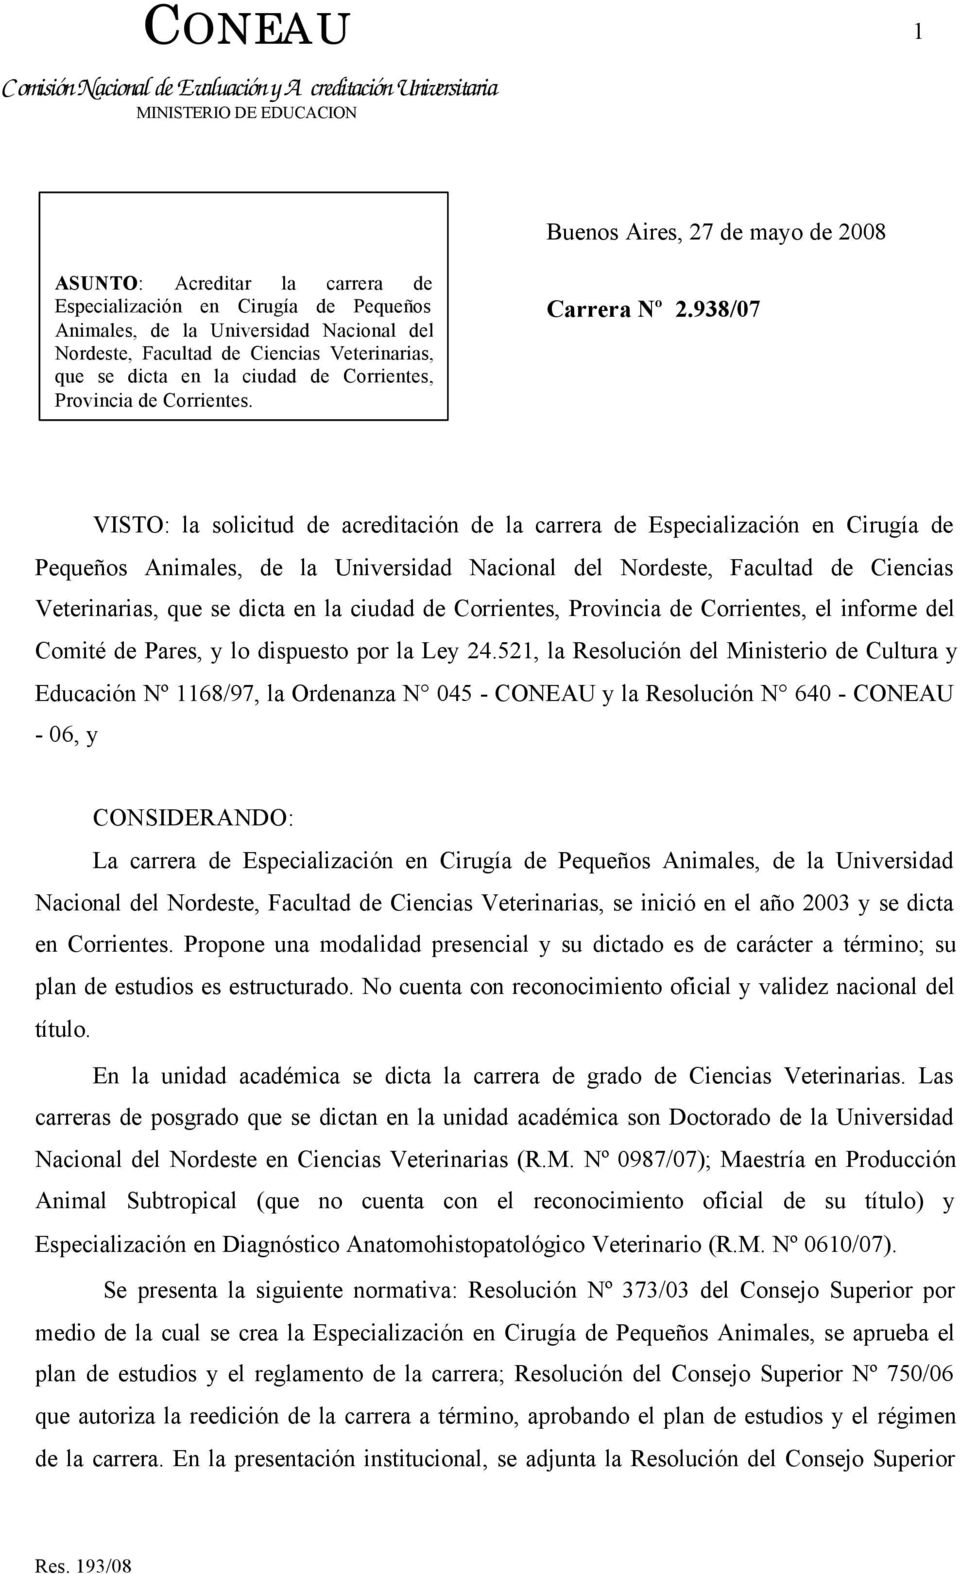 938/07 VISTO: la solicitud de acreditación de la carrera de Especialización en Cirugía de Pequeños Animales, de la Universidad Nacional del Nordeste, Facultad de Ciencias Veterinarias, que se dicta